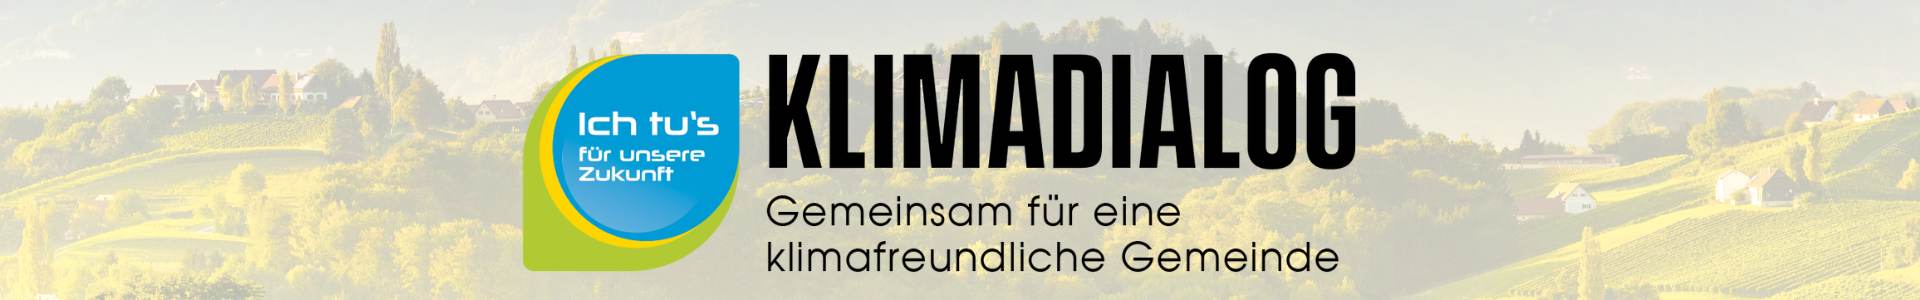 Klimadialog Logo auf Bildhintergrund, zeigt südsteirische Weinlandschaft